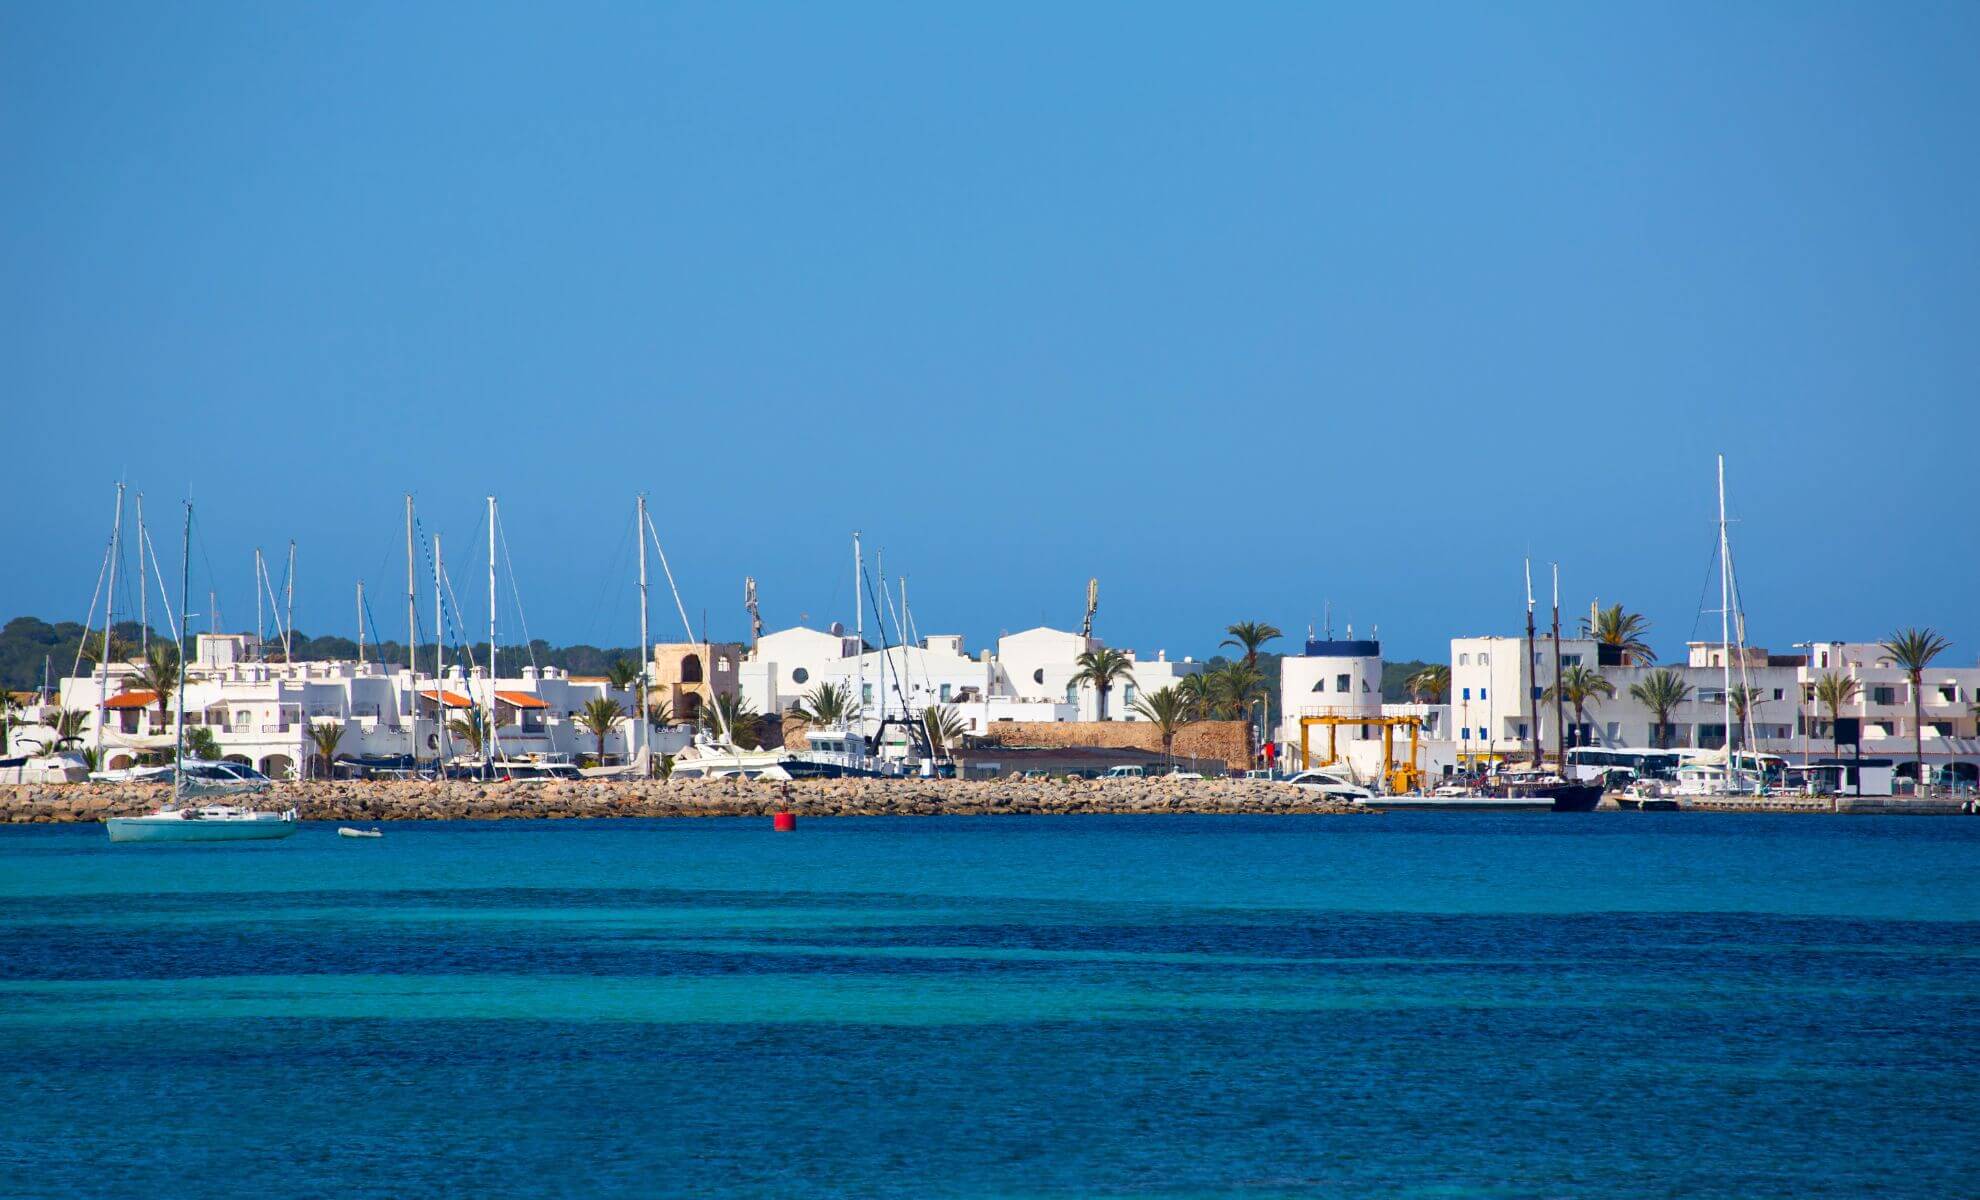 Le village portuaire de La Savina, île de Formentera, Espagne